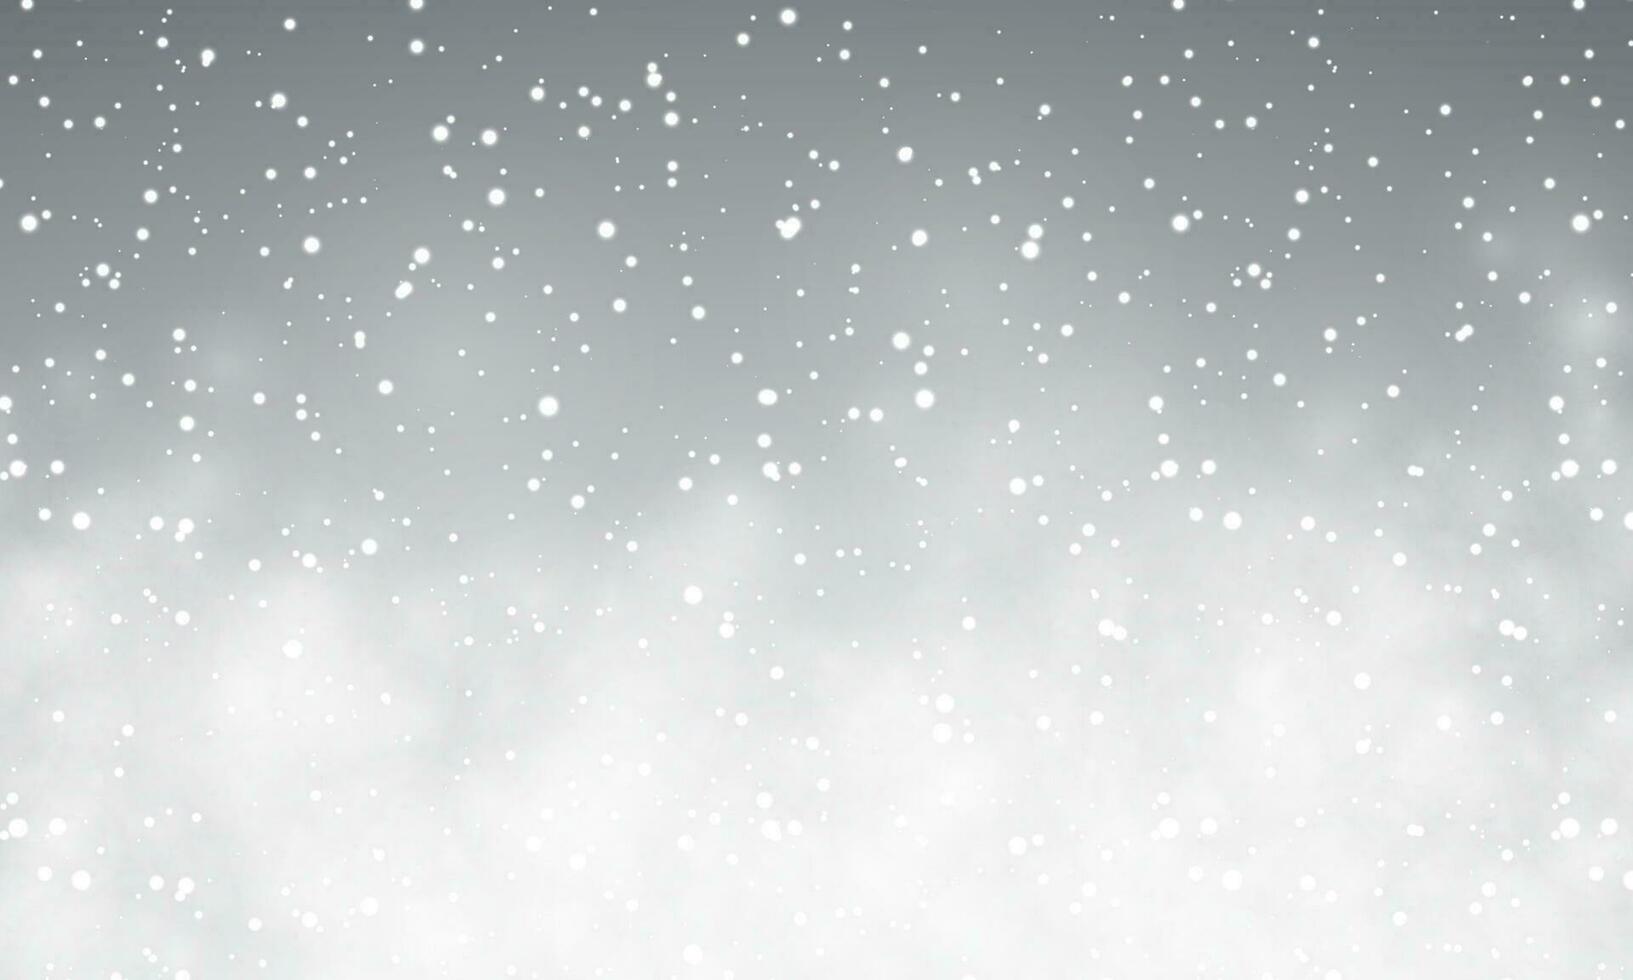 Natale neve. caduta i fiocchi di neve su notte sfondo. nevicata. vettore illustrazione